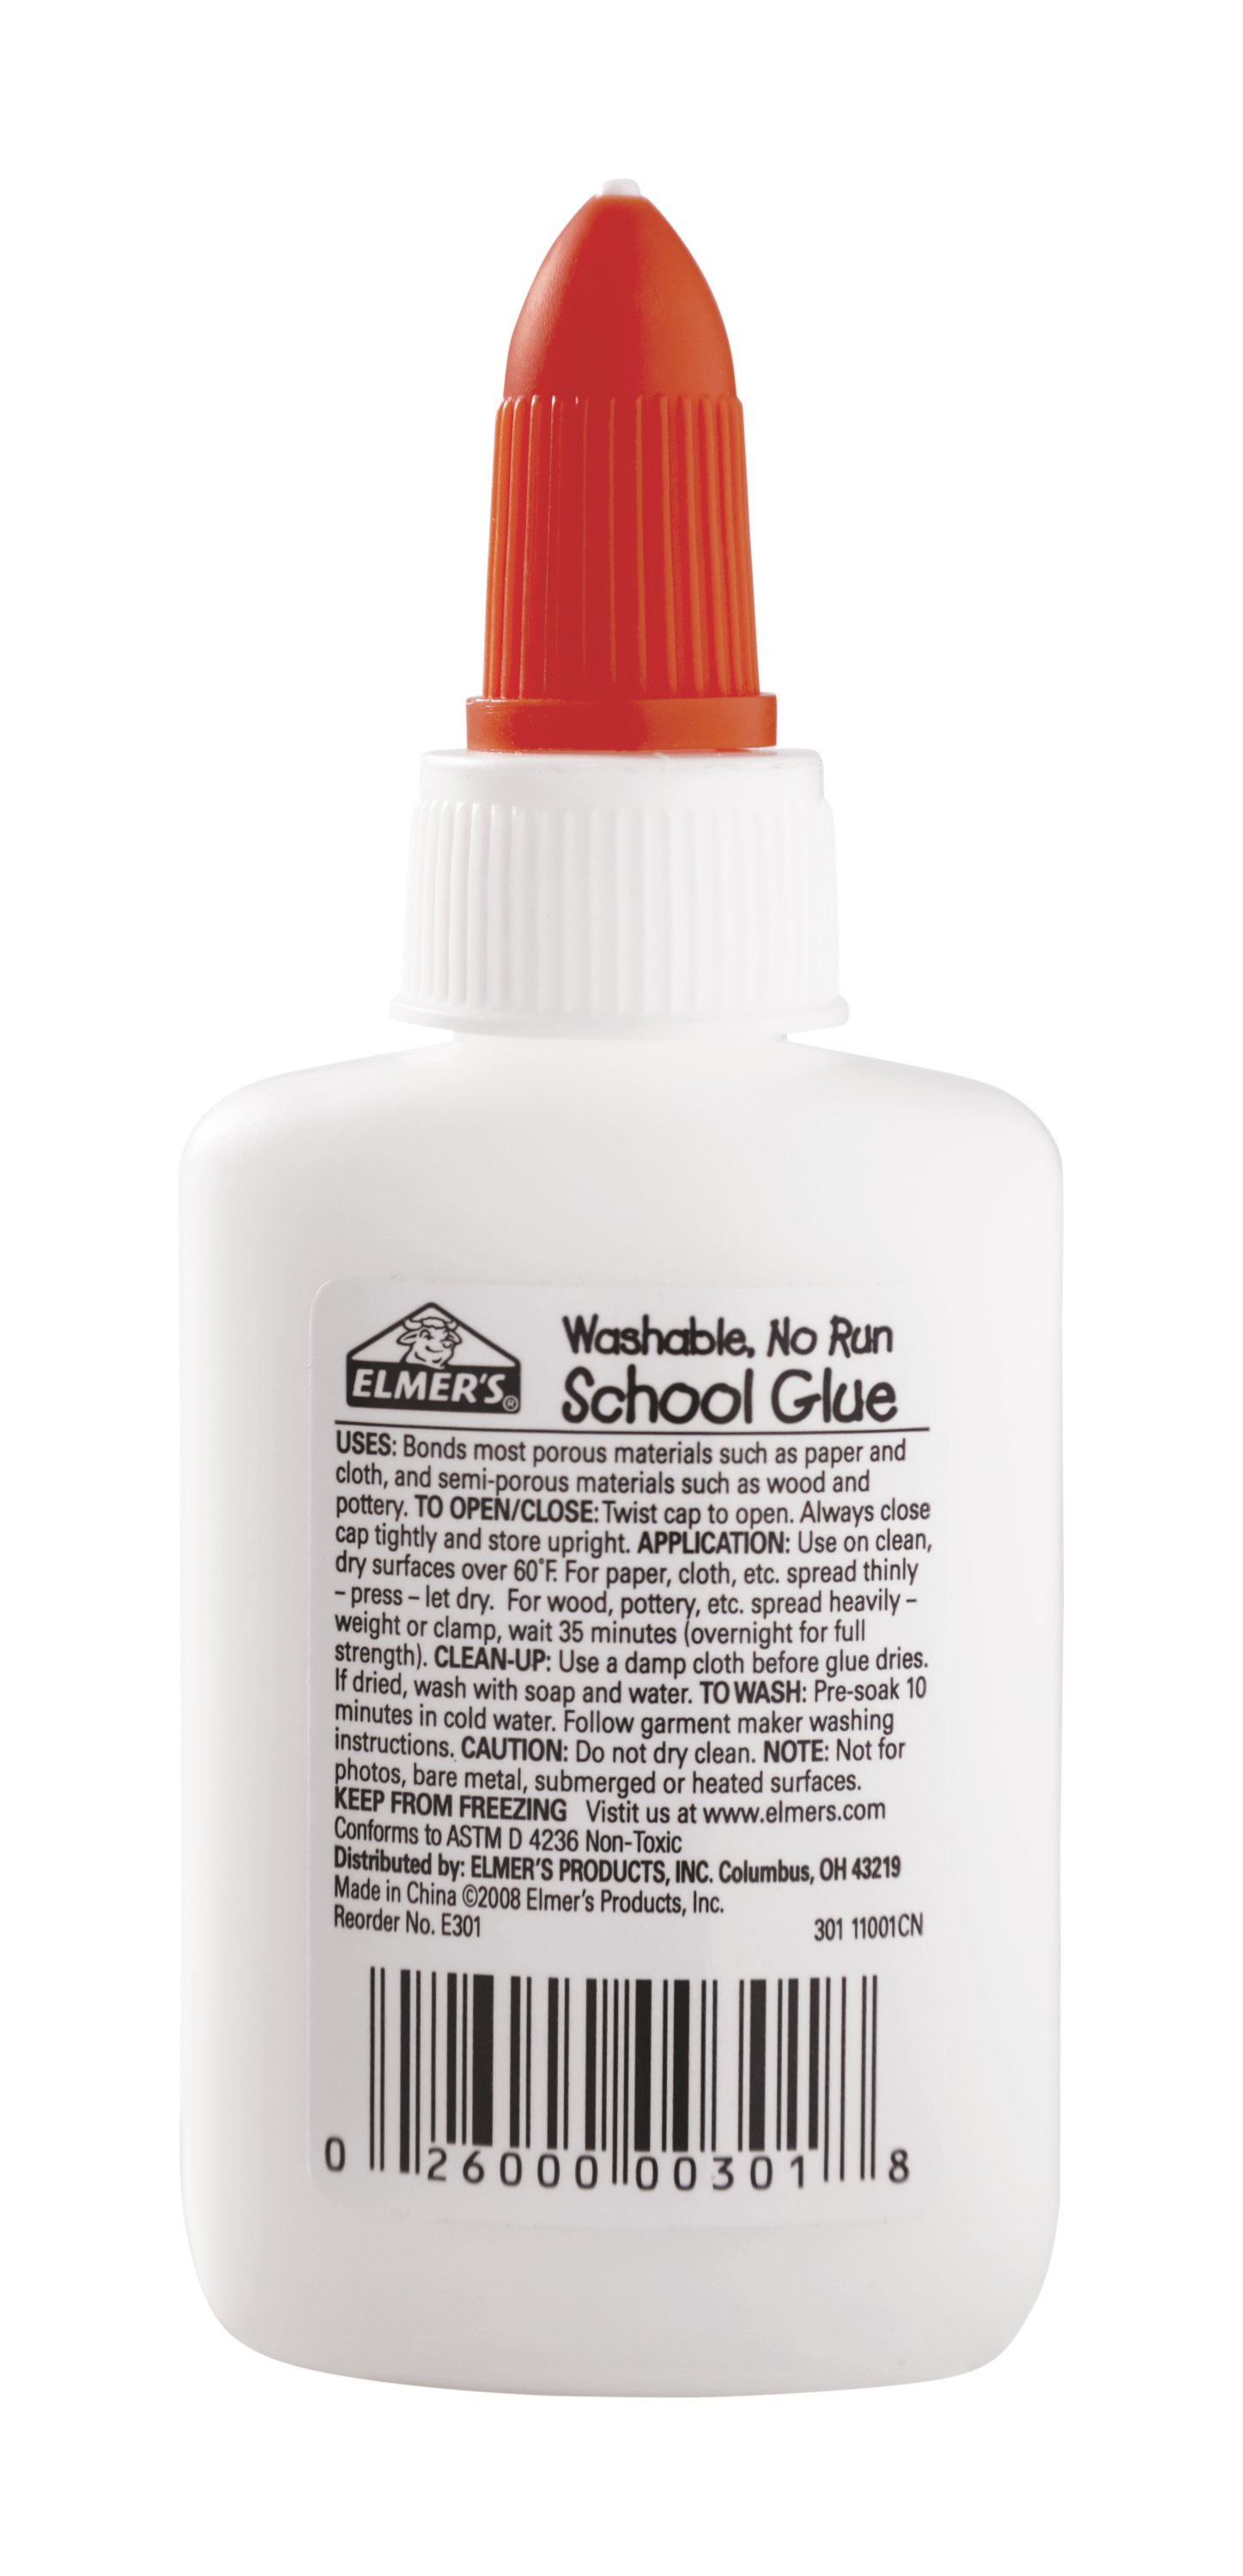 Elmer's School Glue (7 Bottles) - 4 fl oz Each - #1 Teacher Brand